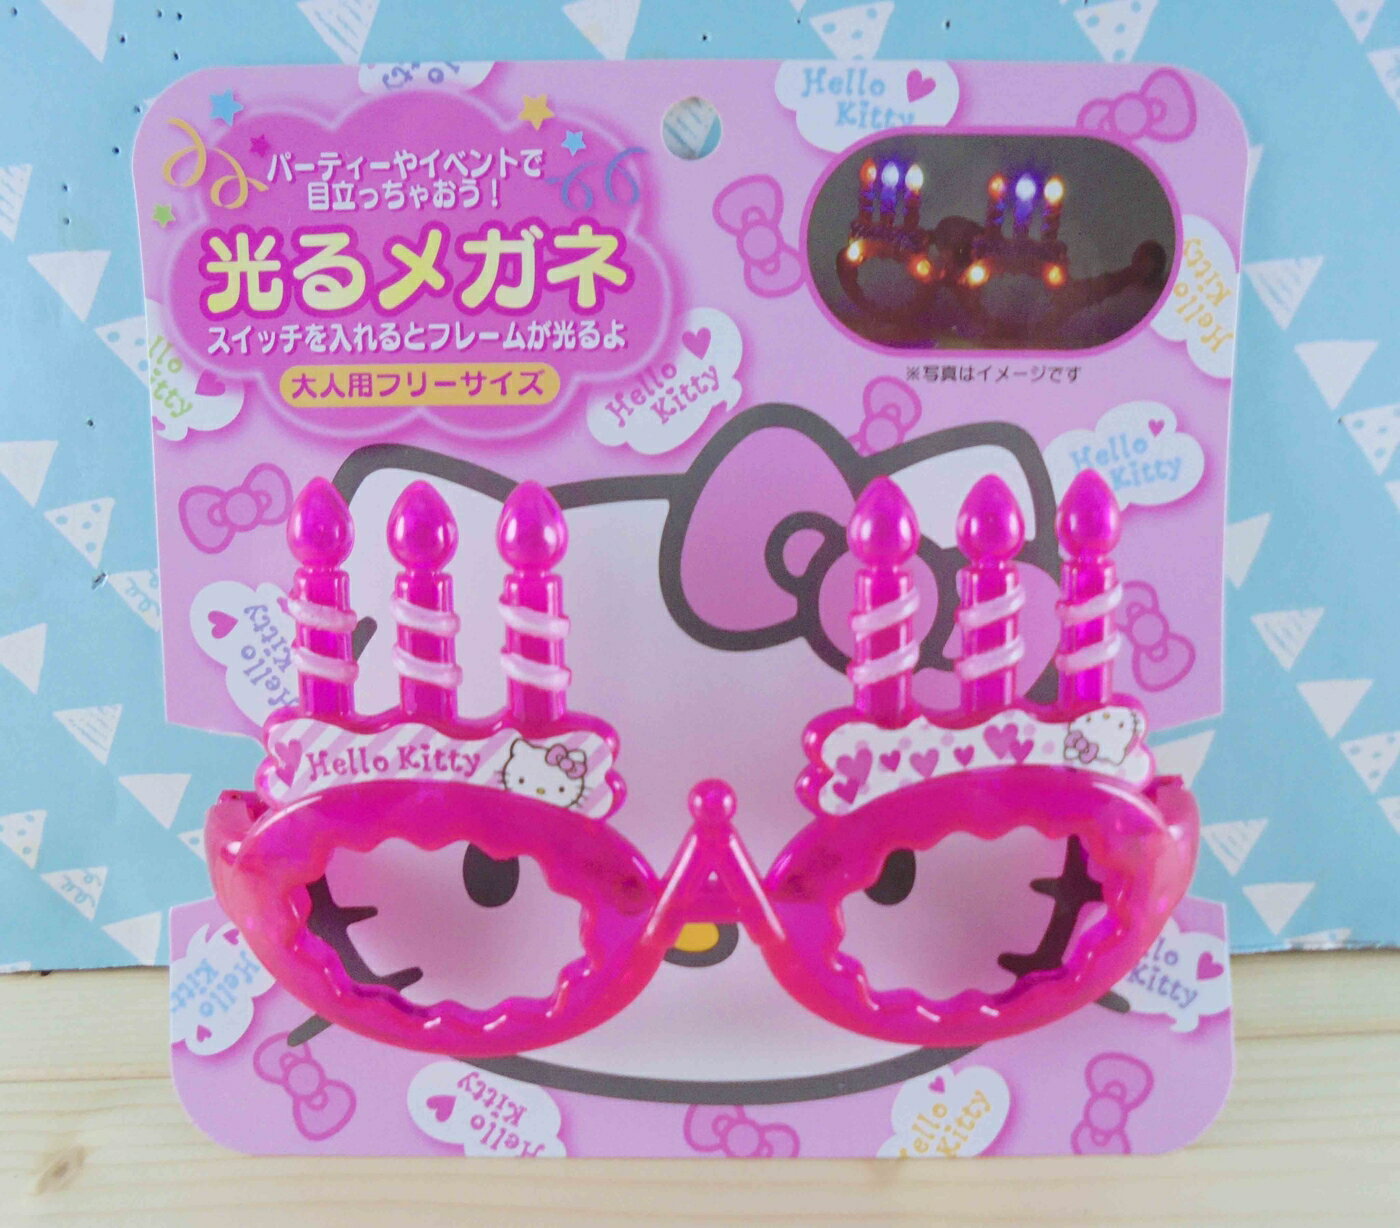 【震撼精品百貨】Hello Kitty 凱蒂貓 KITTY造型眼鏡-粉蠟燭 震撼日式精品百貨